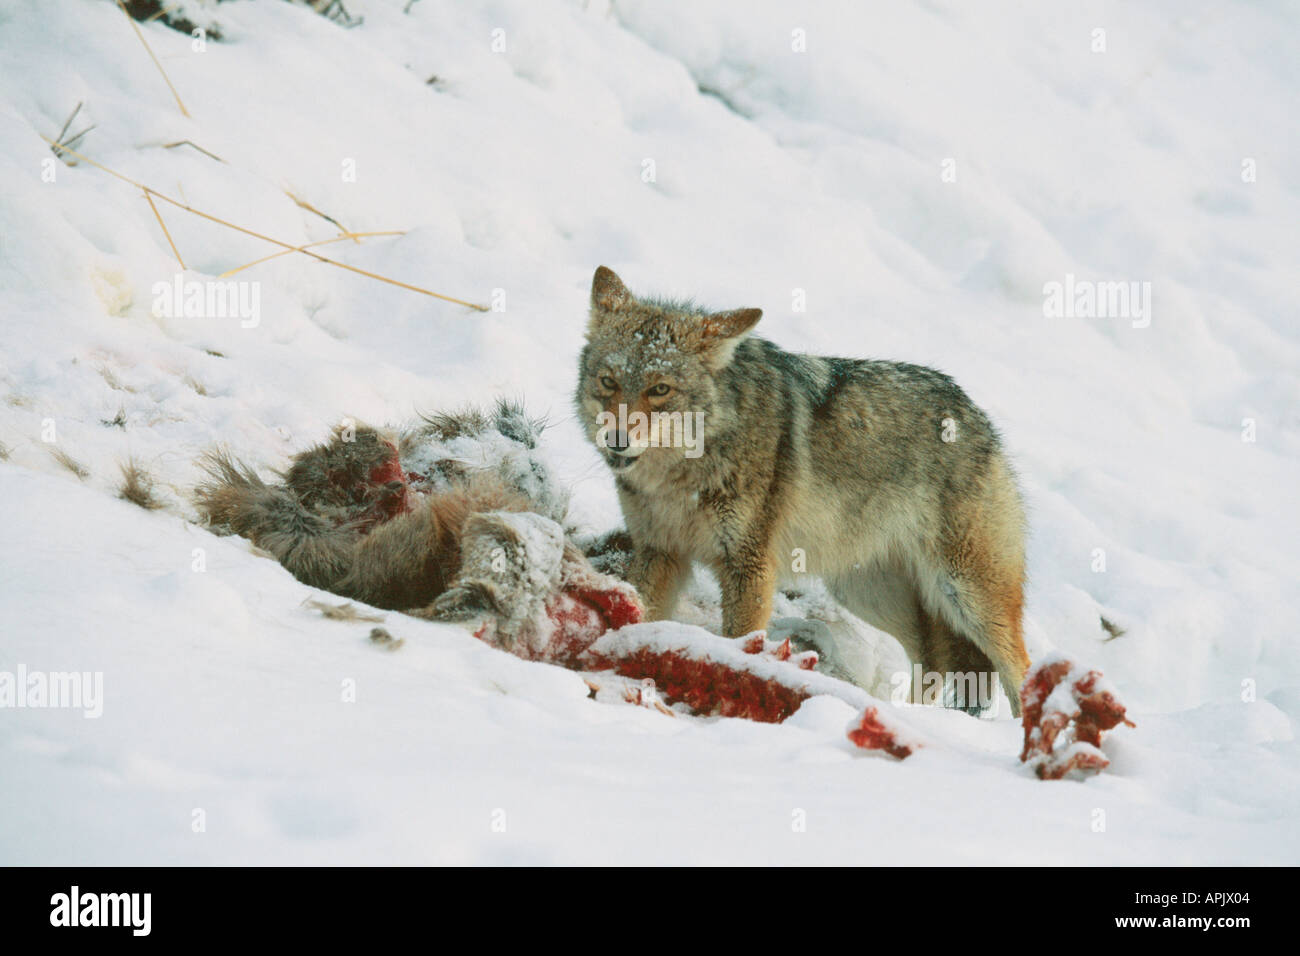 Le coyote se nourrit de carcasses de wapitis pendant la saison d'hiver. Banque D'Images